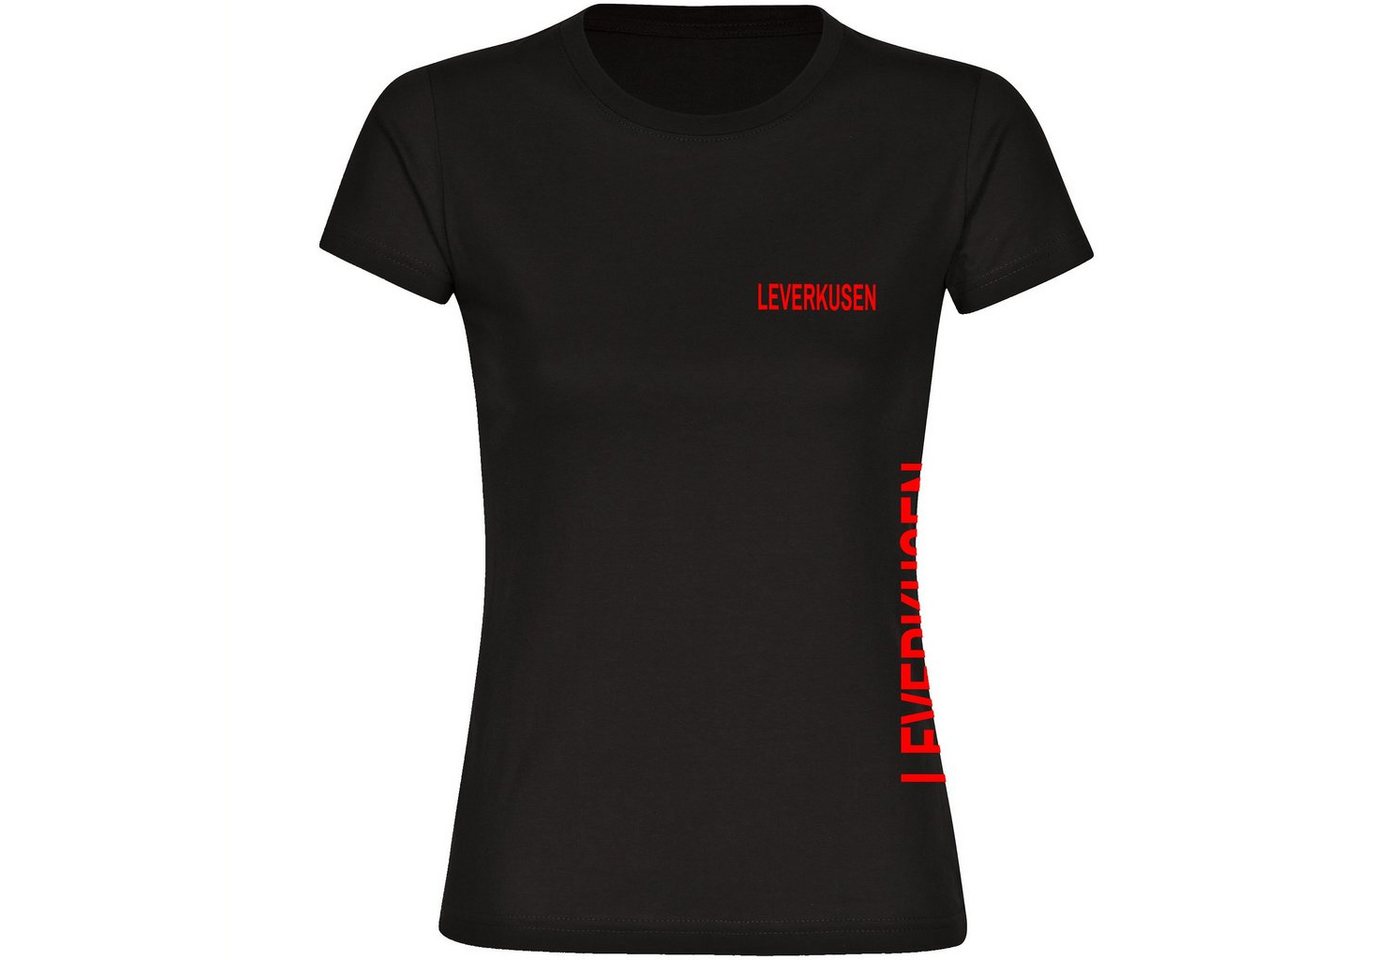 multifanshop T-Shirt Damen Leverkusen - Brust & Seite - Frauen von multifanshop